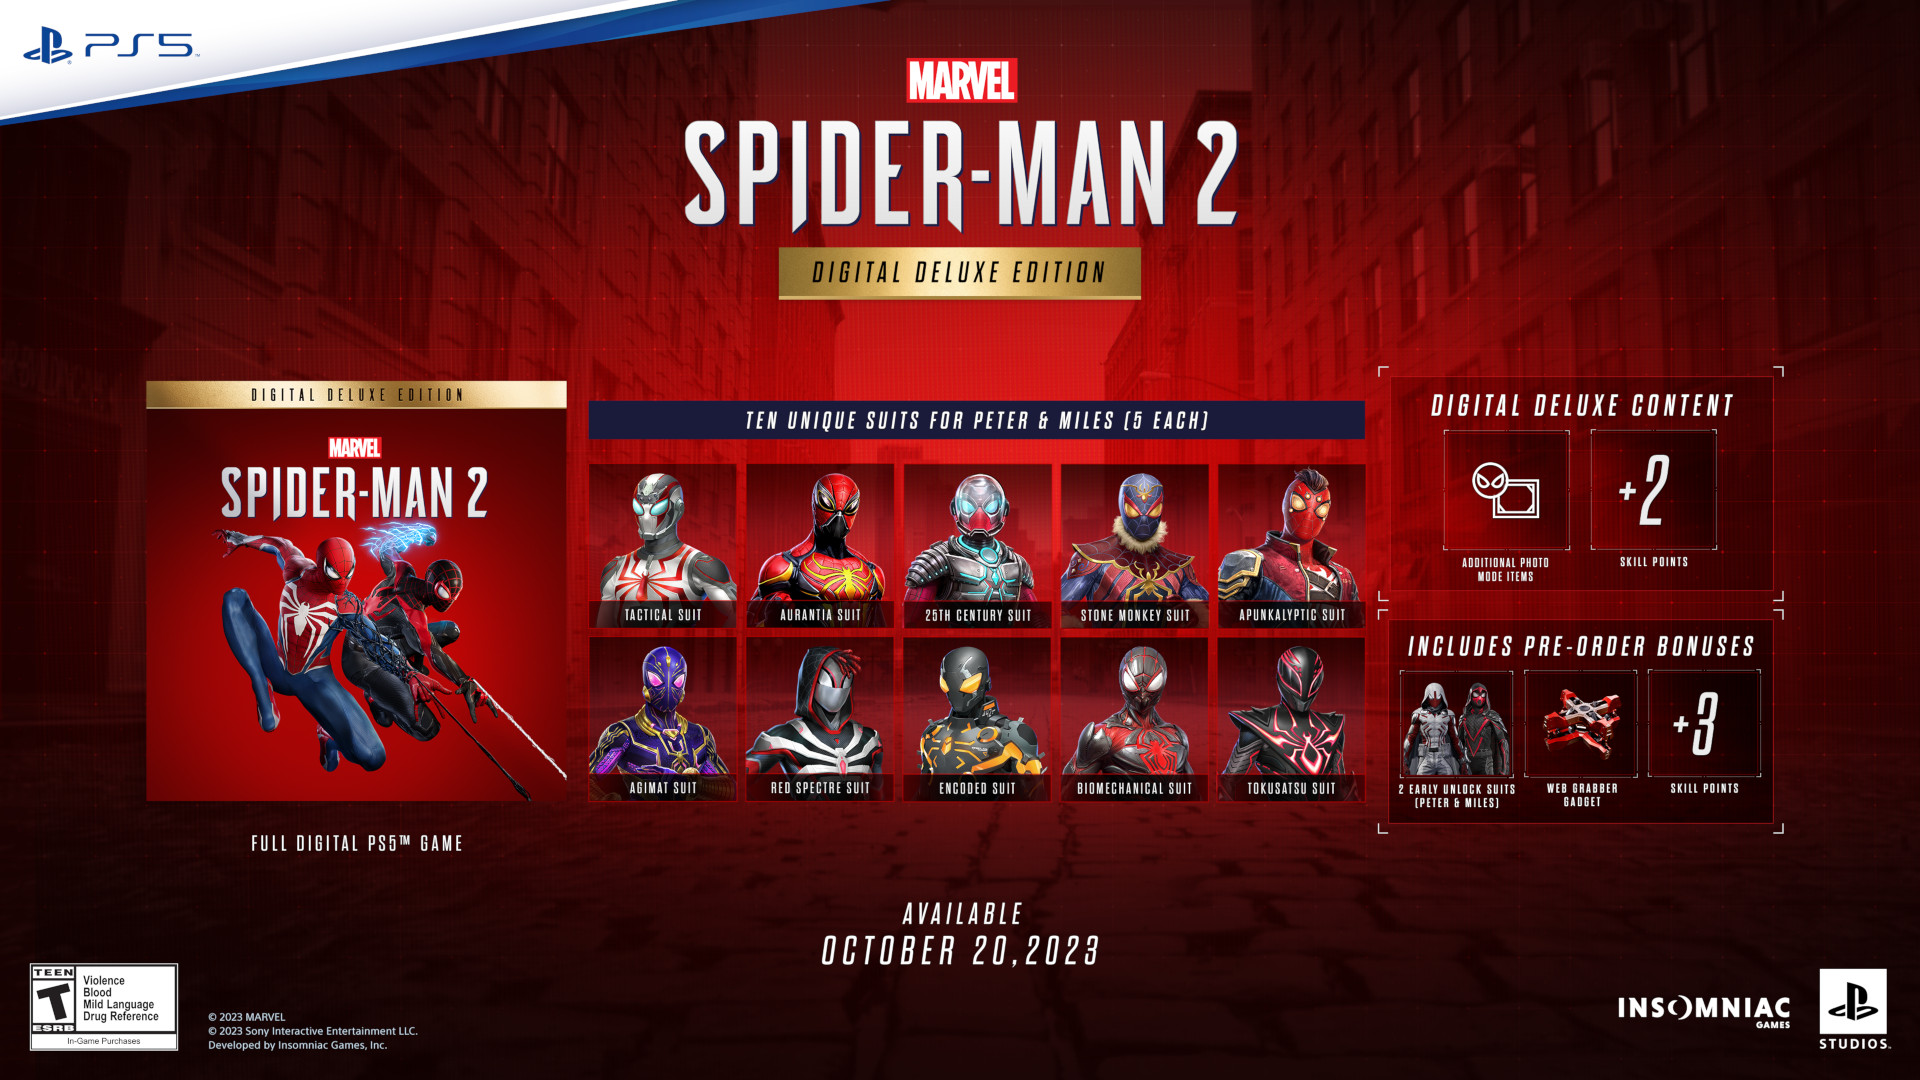 Spider-Man 2 PlayStation game to unleash Venom in 2023 - CNET